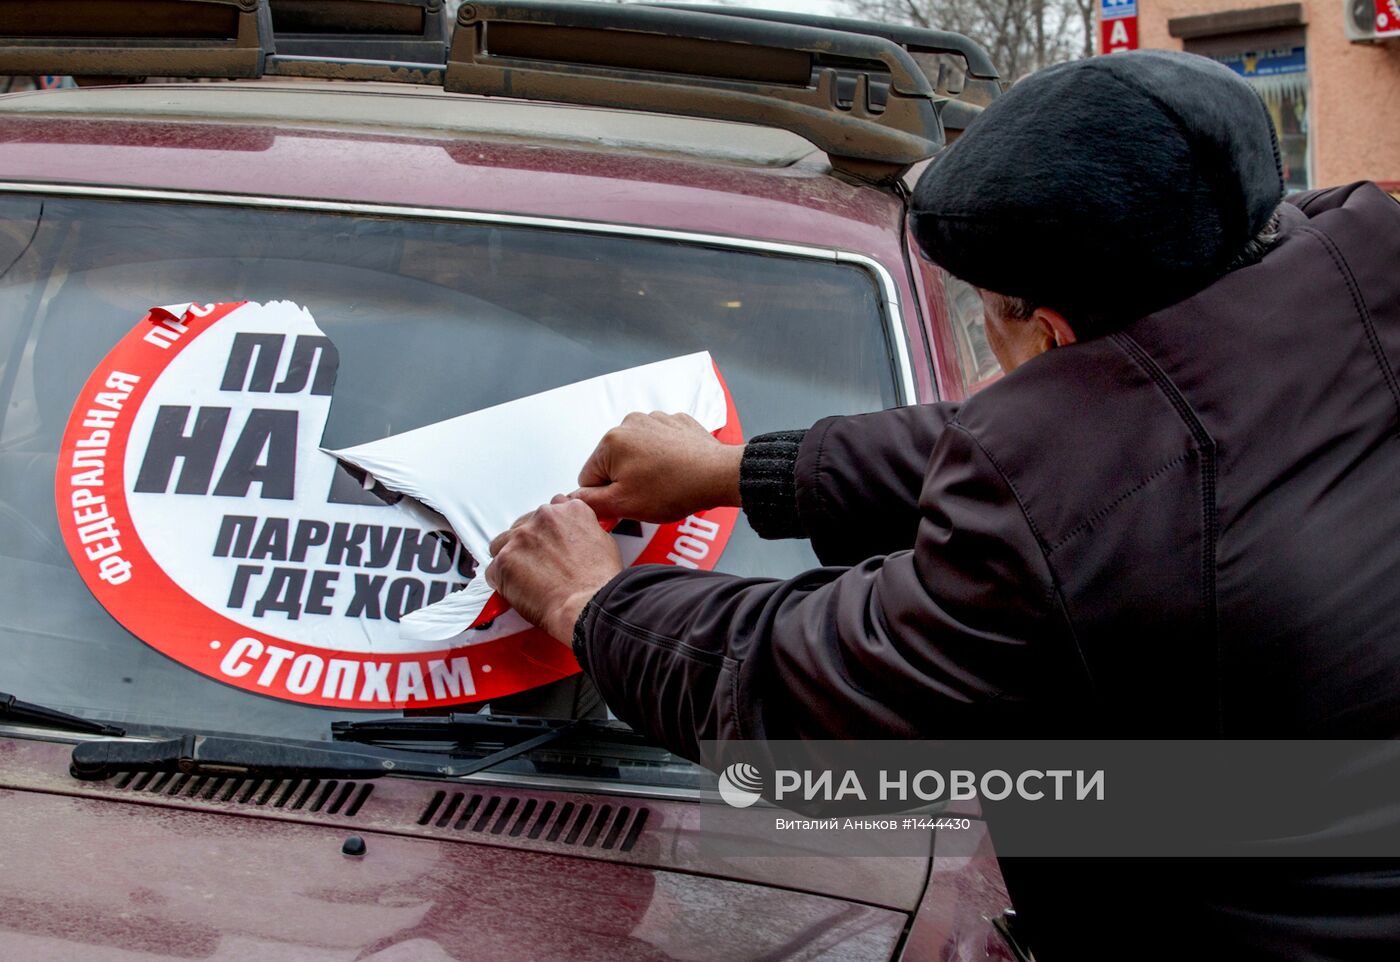 Акция движения "СтопХам" во Владивостоке